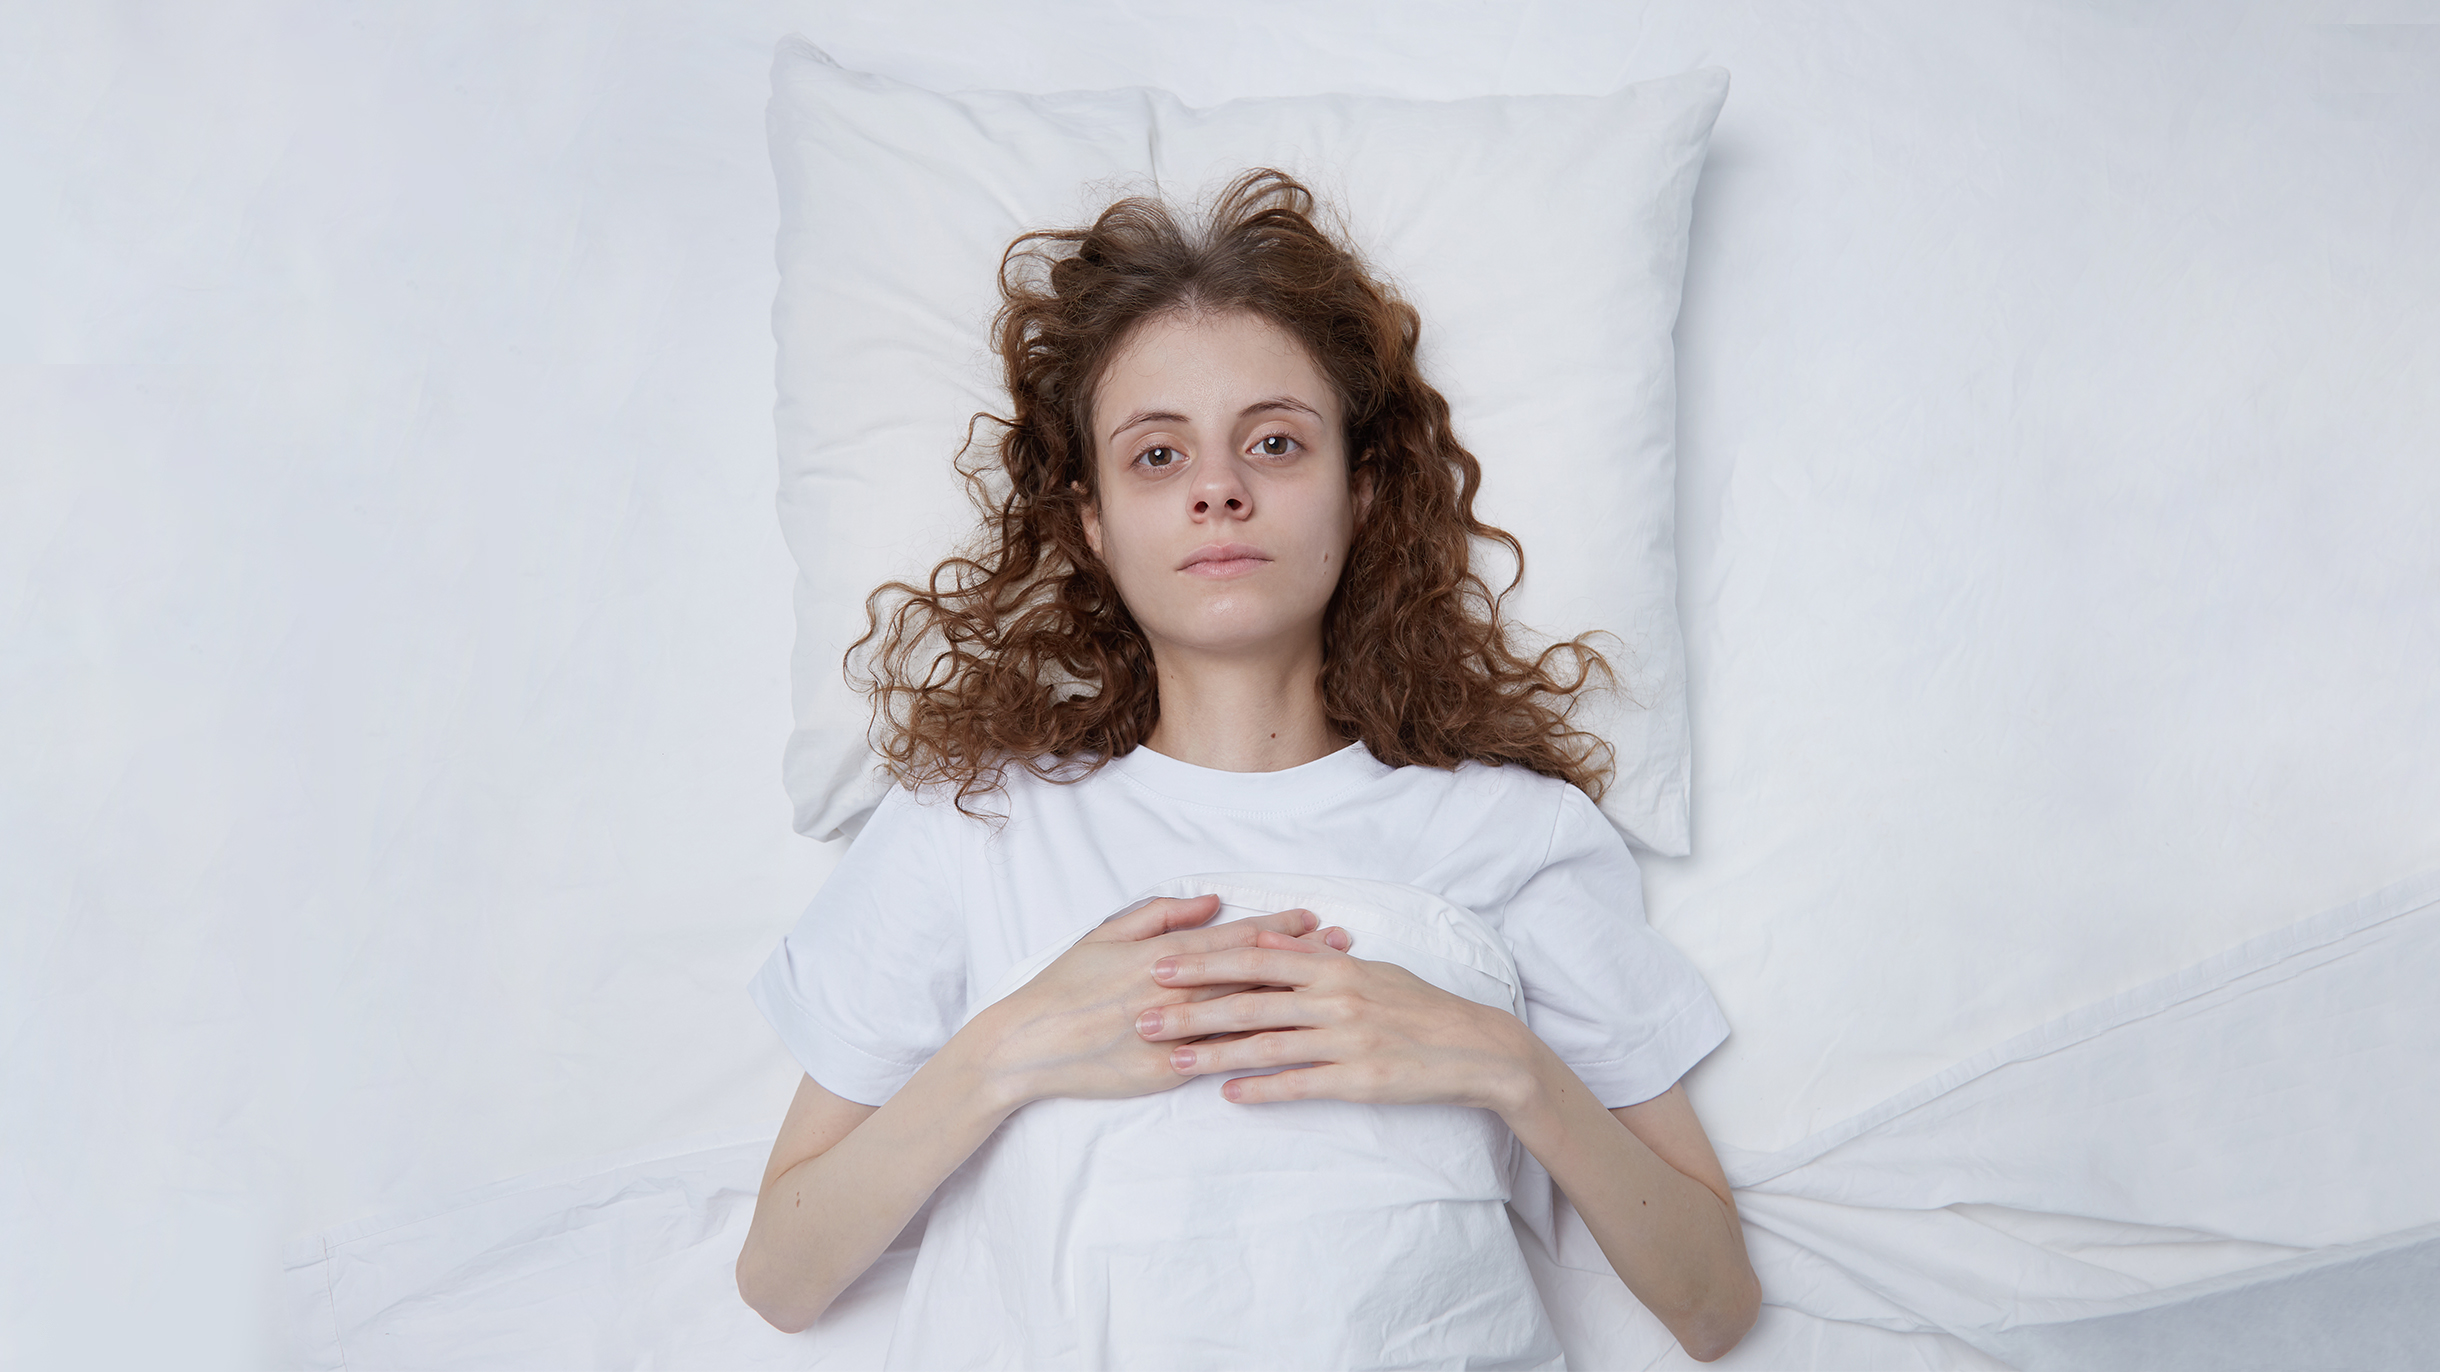 Как быстро уснуть: 8 советов и 5 способов без лекарств